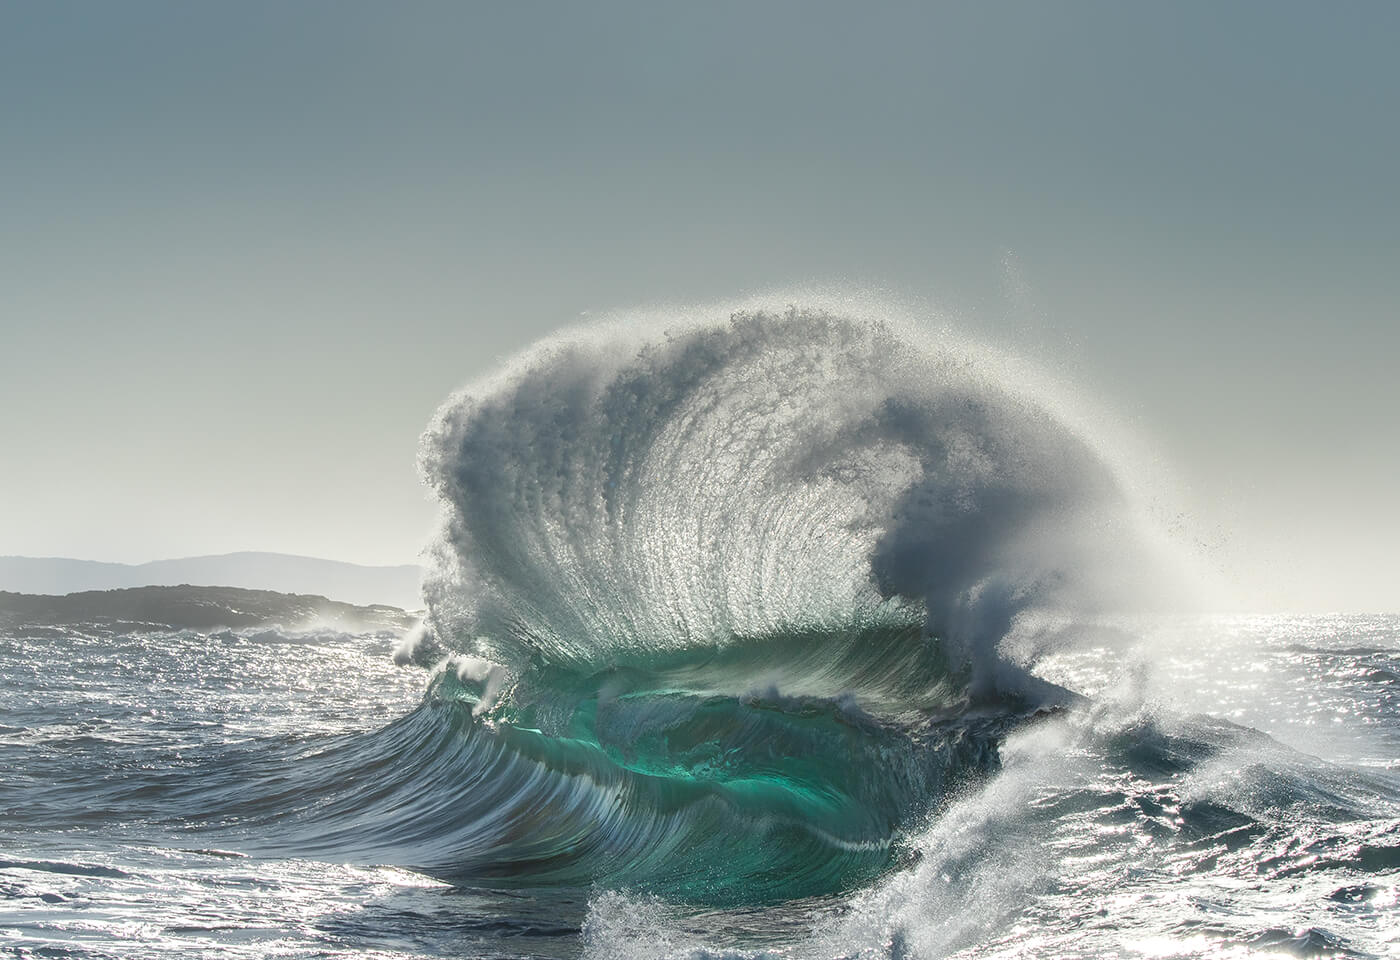 Image of a big ocean wave taken by Scott Harrison